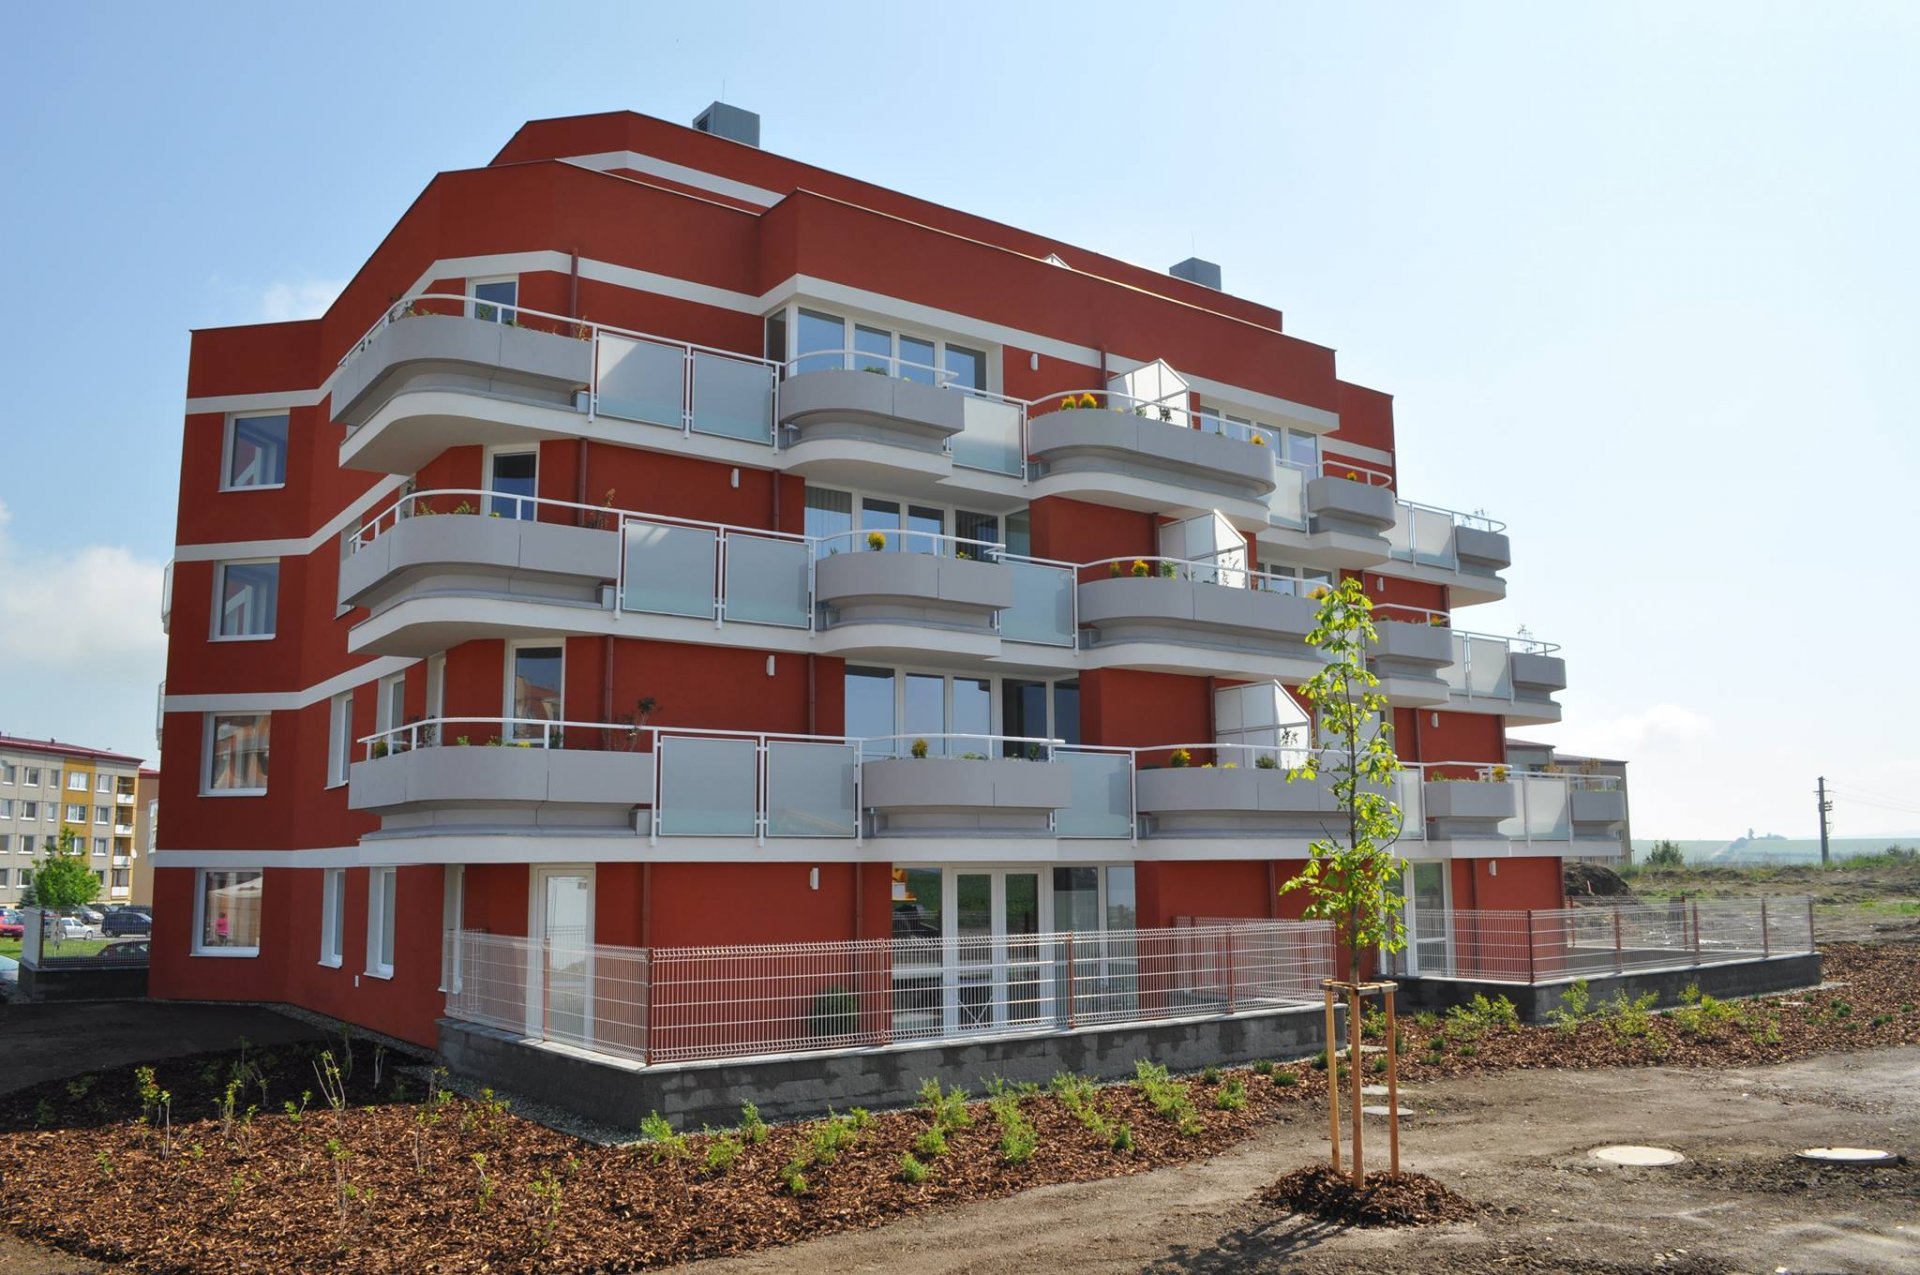 Proč stále rostou ceny bytů v Uherském Hradišti?